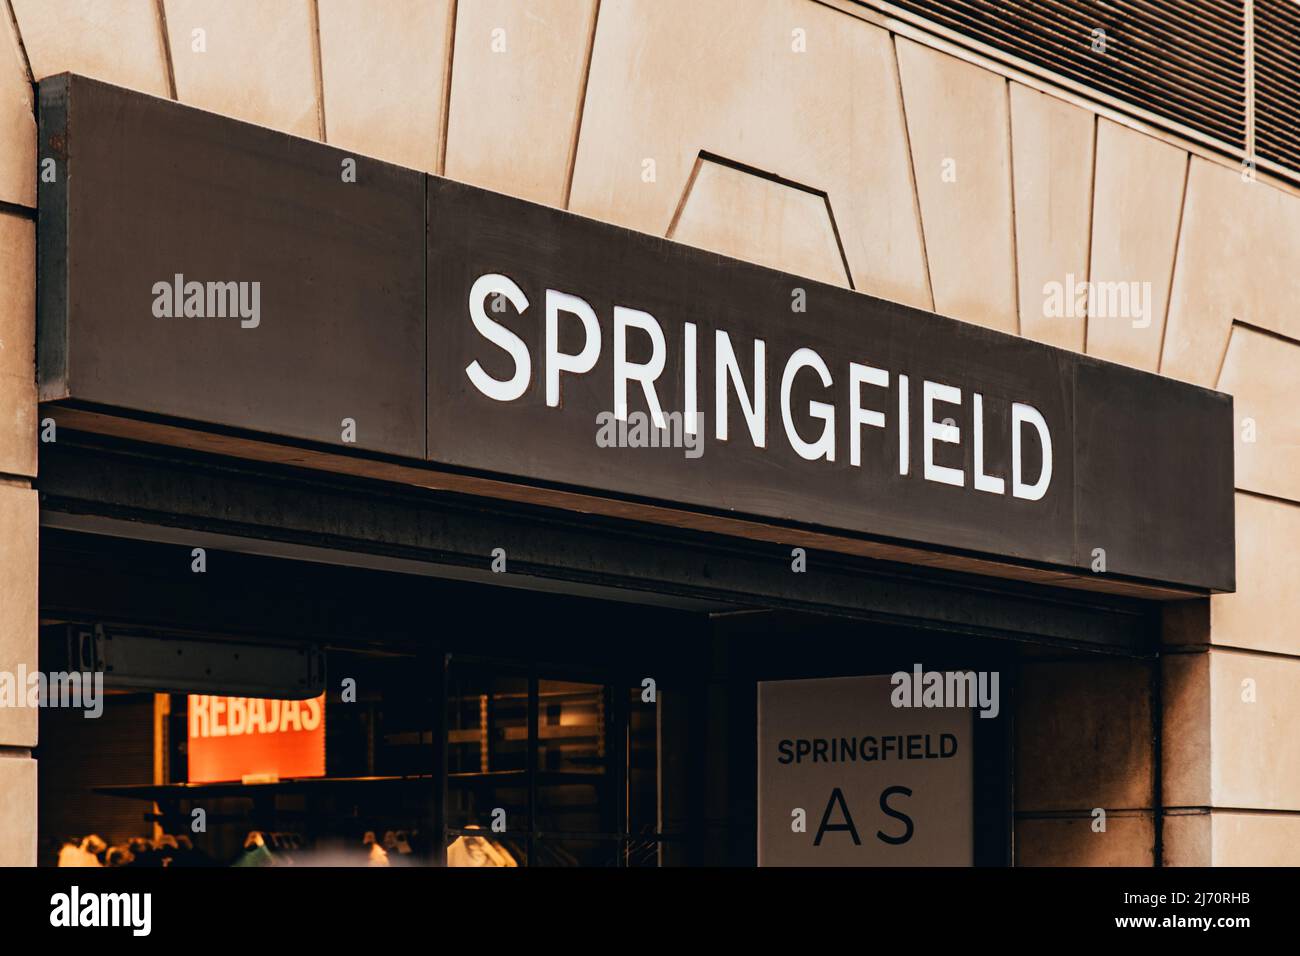 Valence, Espagne - avril 2022 : façade avec le logo de la boutique Springfield à Valence. Magasin de vêtements Springfield à Valence. Springfield est un espagnol c Banque D'Images